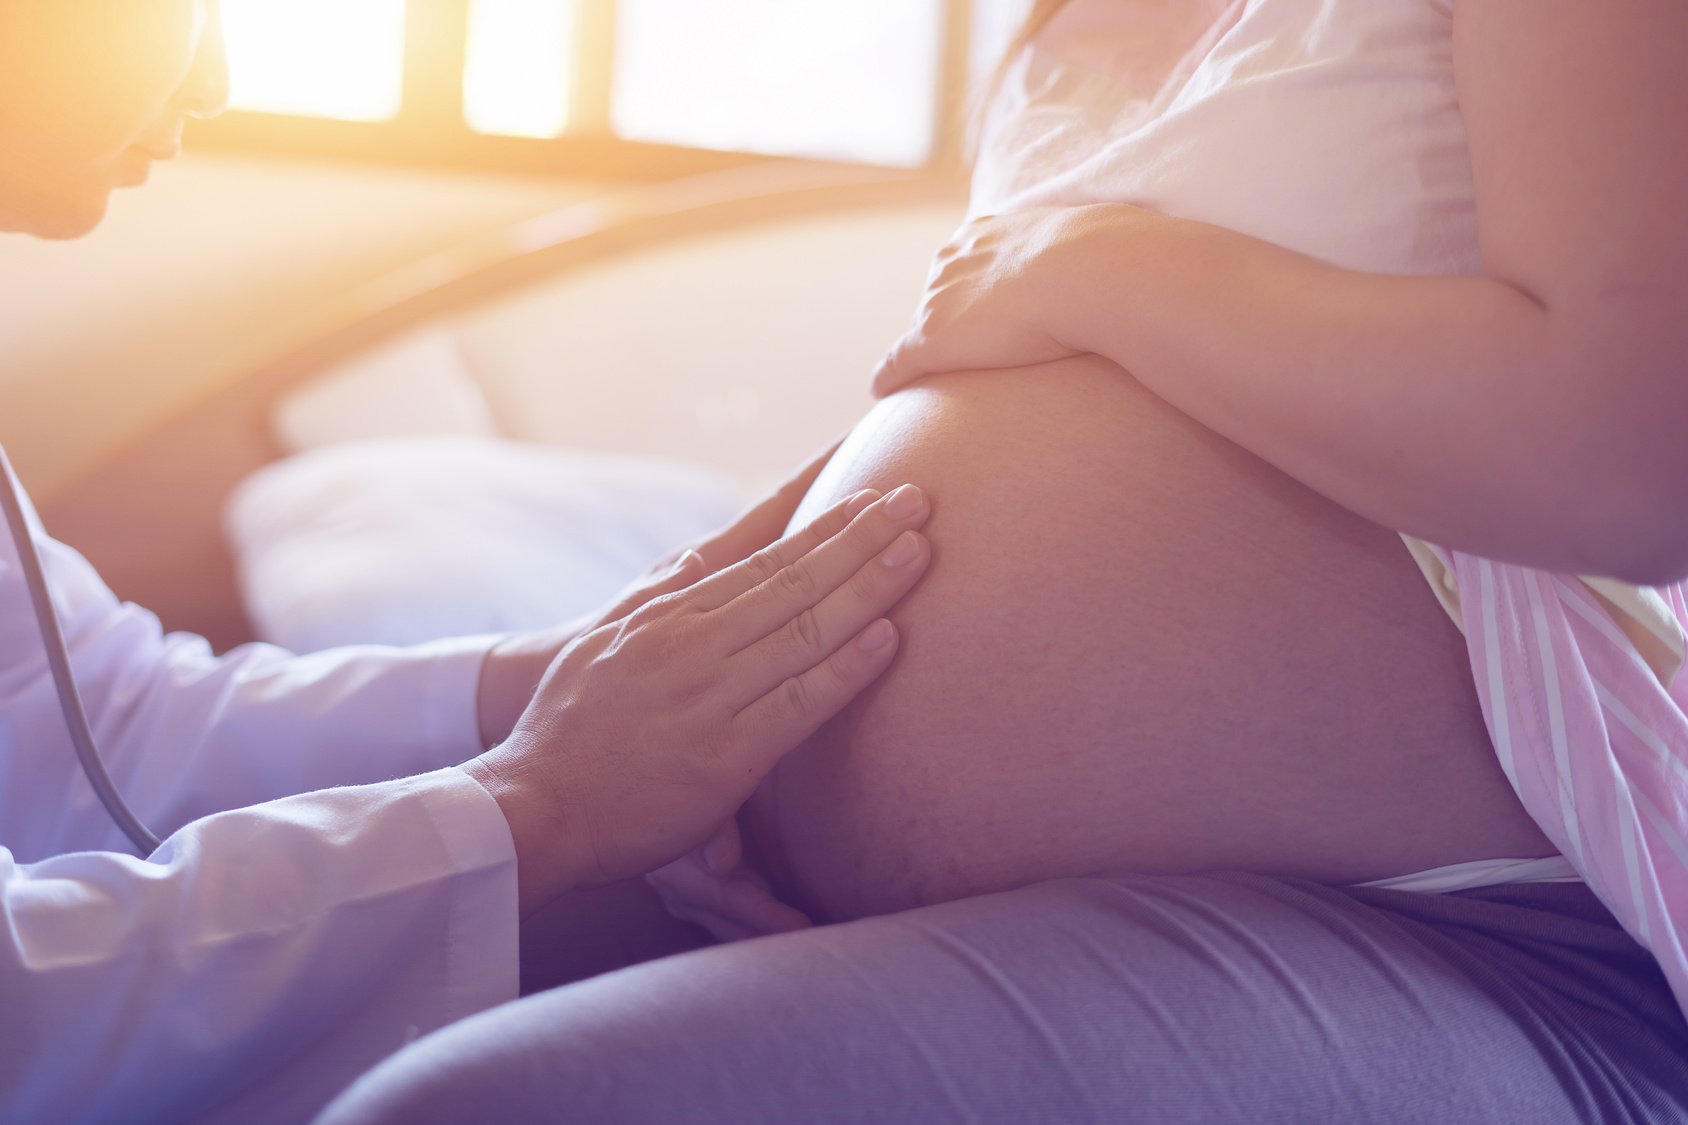 Embarazo con donación de óvulos, ¿qué influencia tiene la mamá gestante?